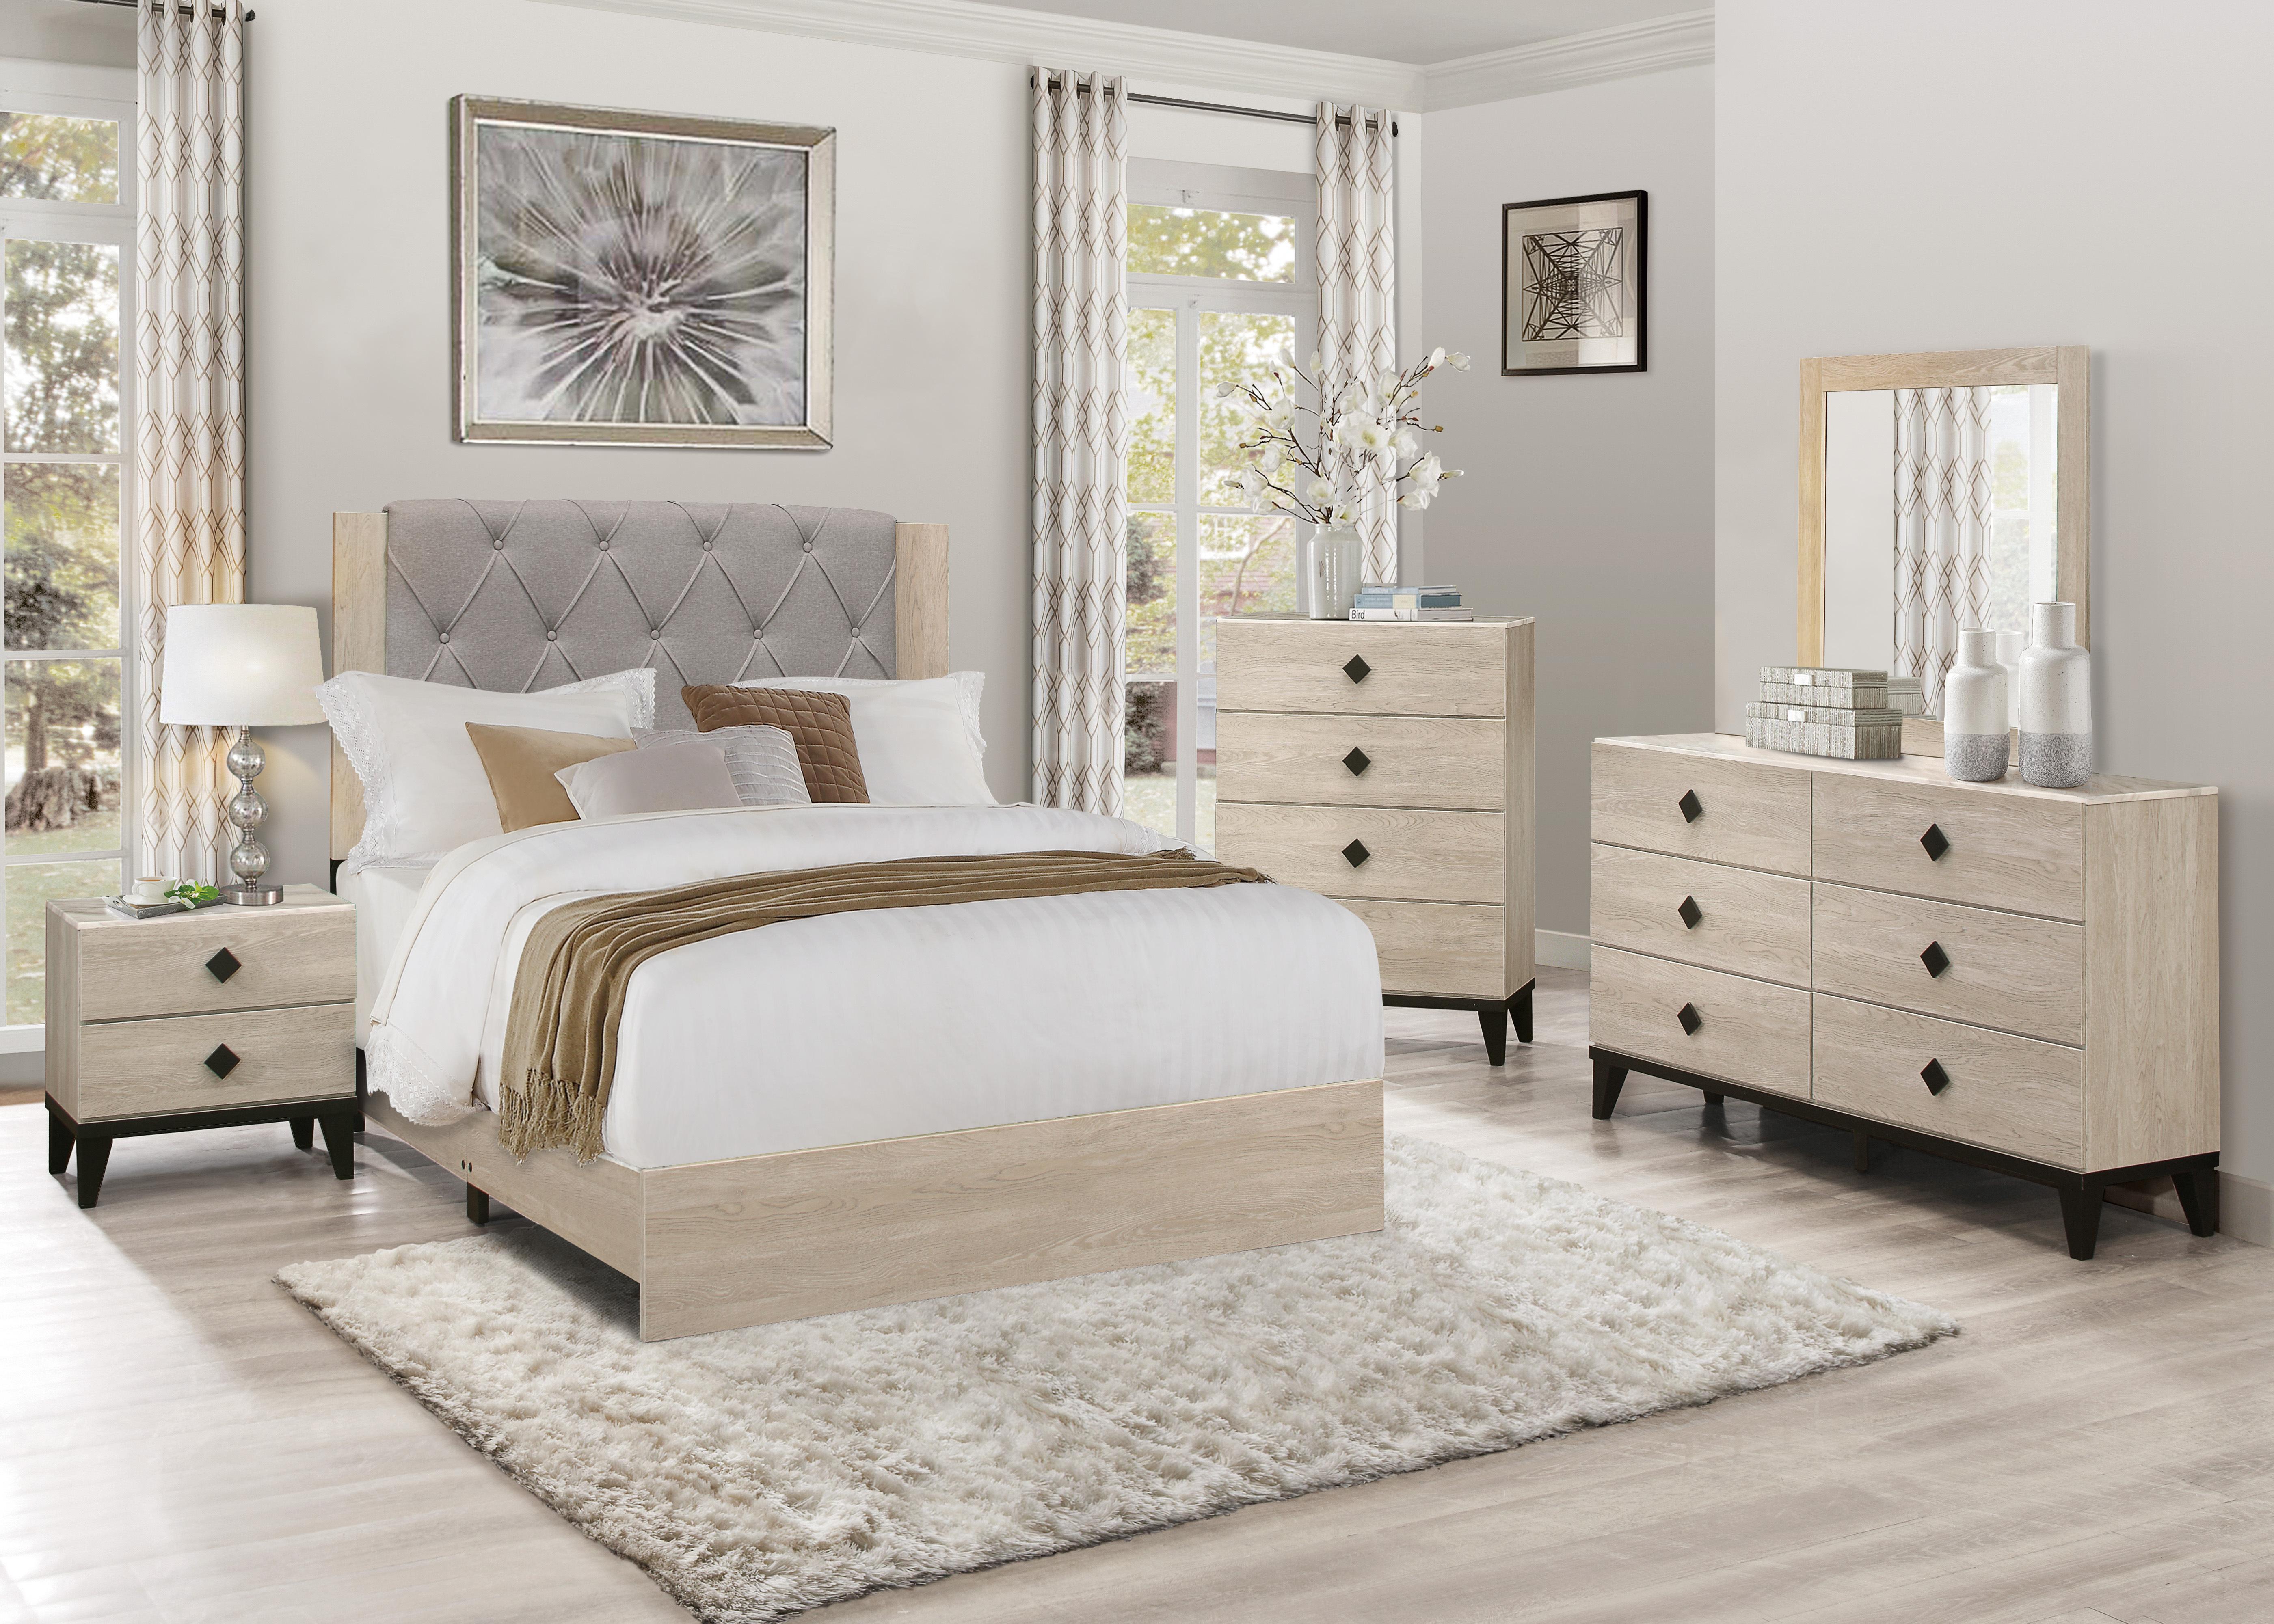 

    
Modern Cream Wood Full Bedroom Set 5pcs Homelegance 1524F-1 Whiting
